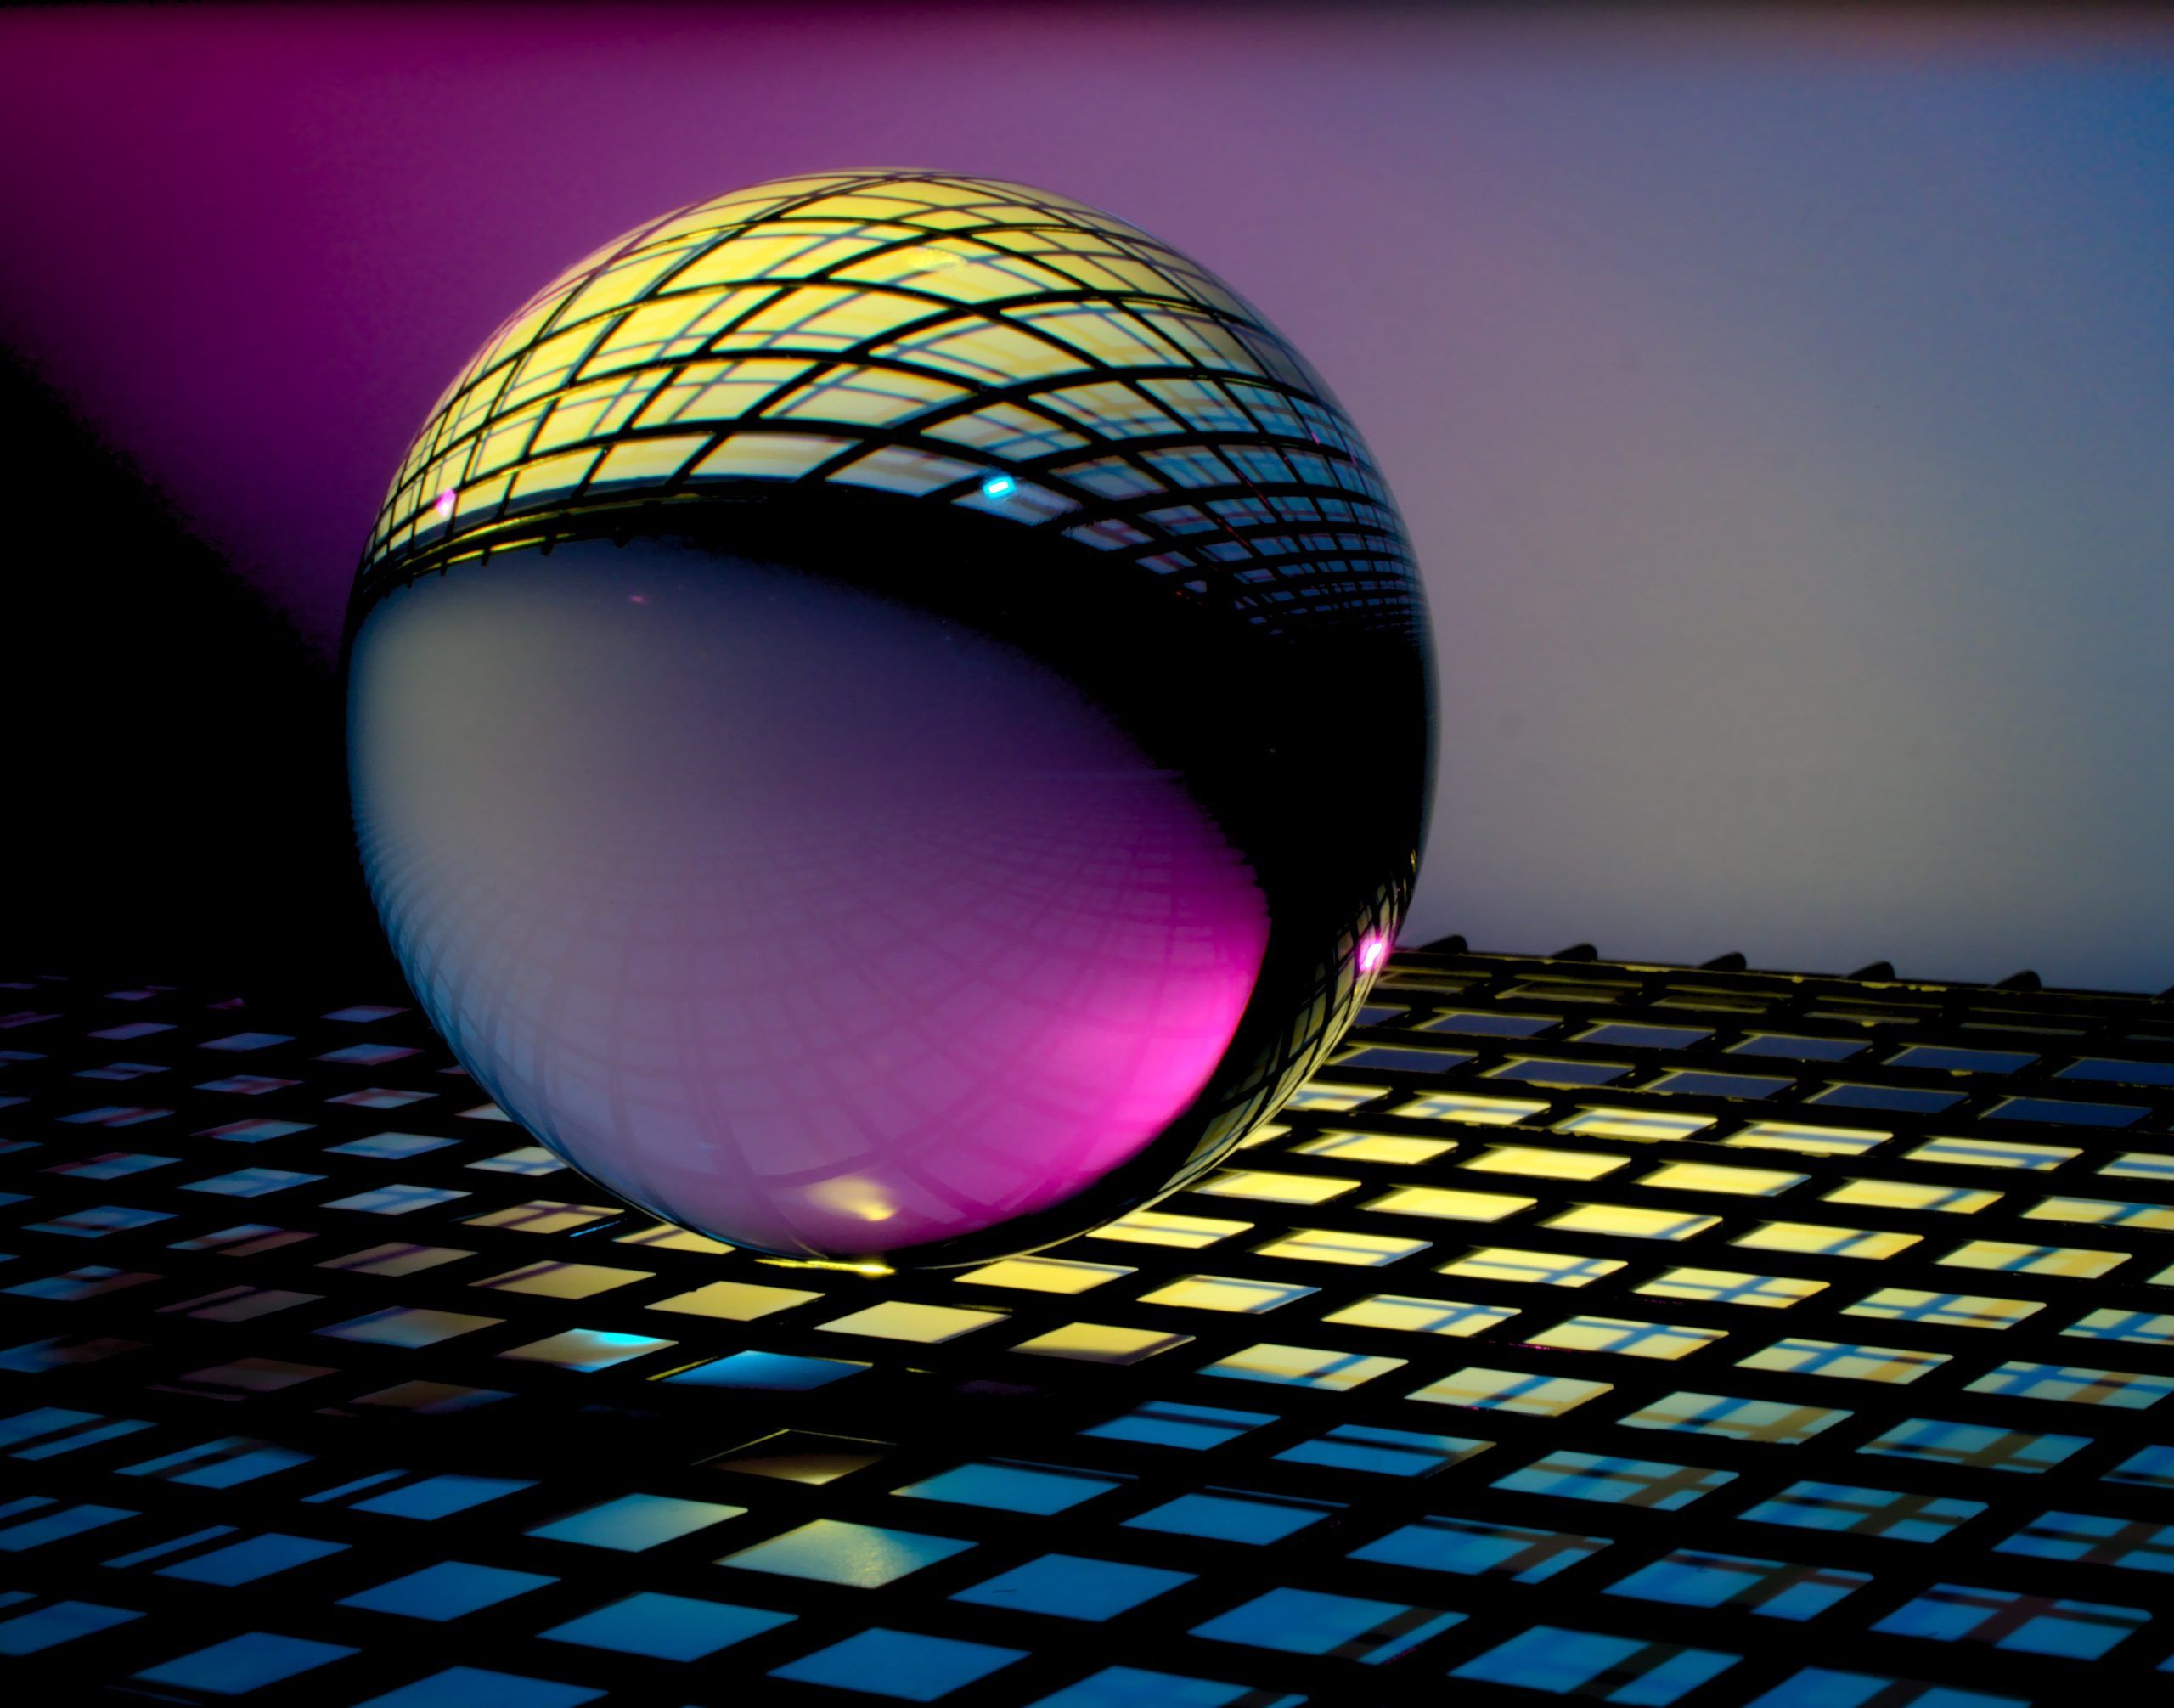 Dibujo digital de una esfera transparente sobre un fondo de rejilla a través de la que se filtra luz amarilla